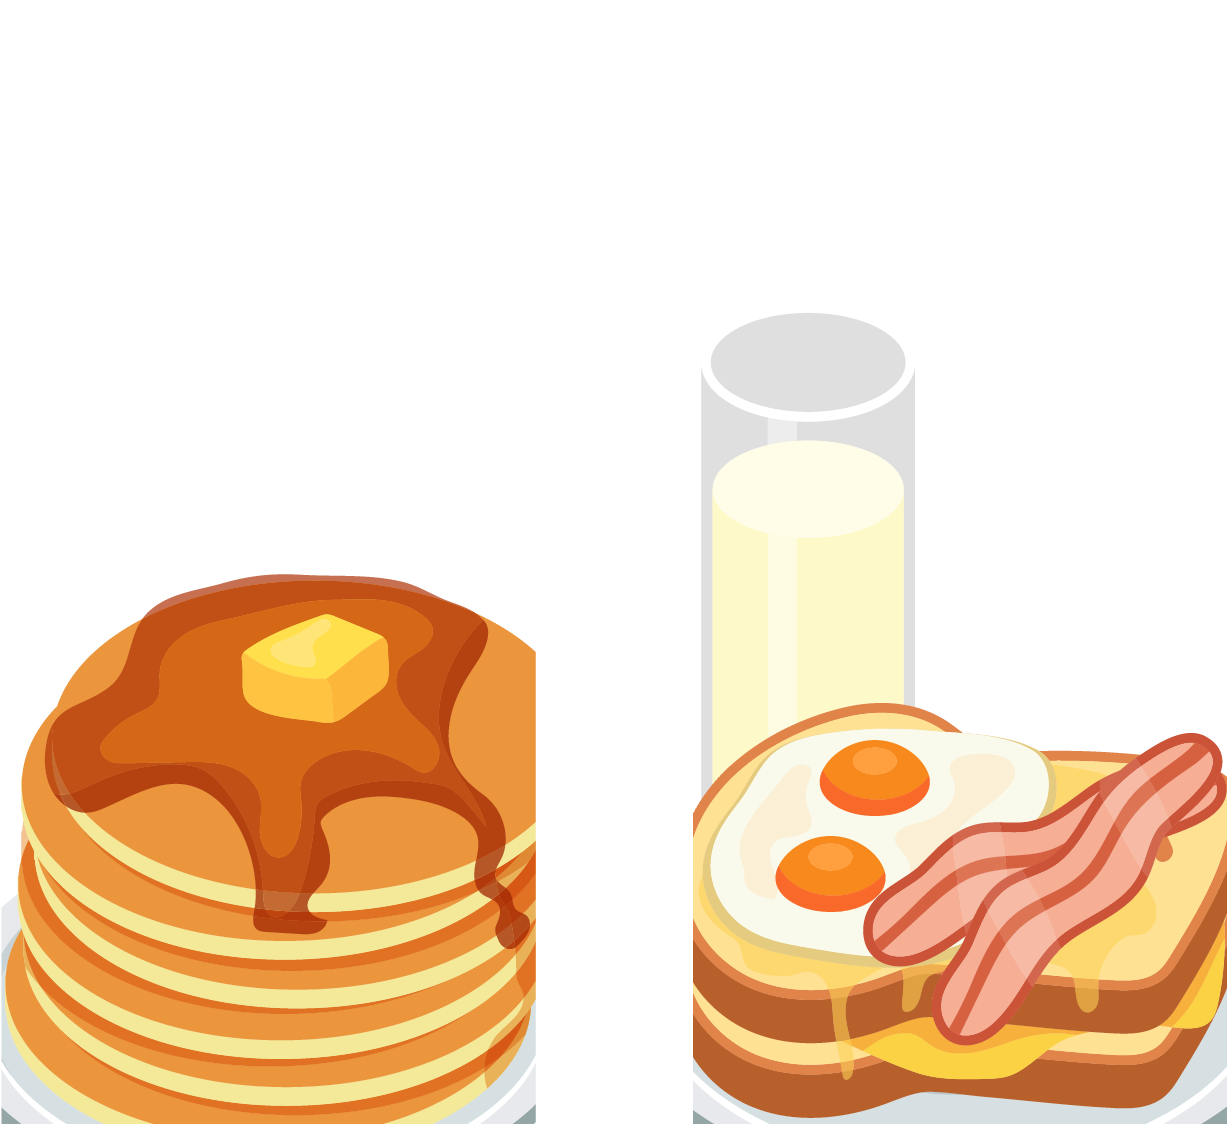 Breakfast Pancake Eating Health - Pancake (1226x1135)